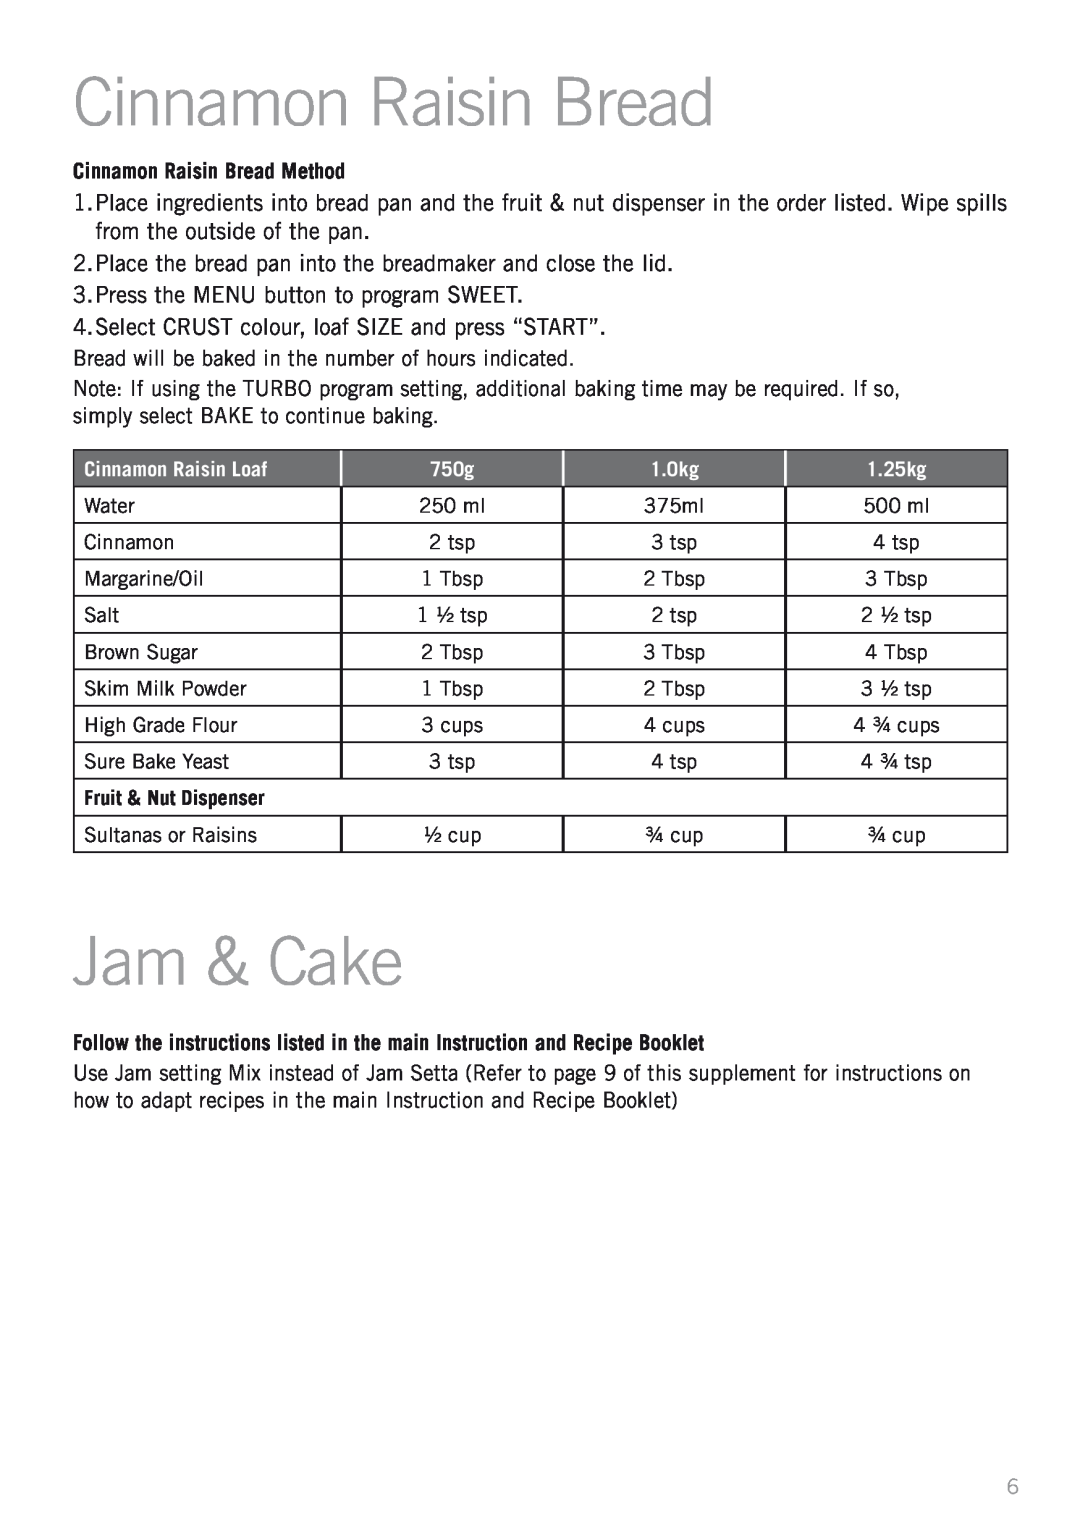 Sunbeam BM4500 manual Jam & Cake, Cinnamon Raisin Bread Method, Cinnamon Raisin Loaf, 750g, 1.0kg, 1.25kg 